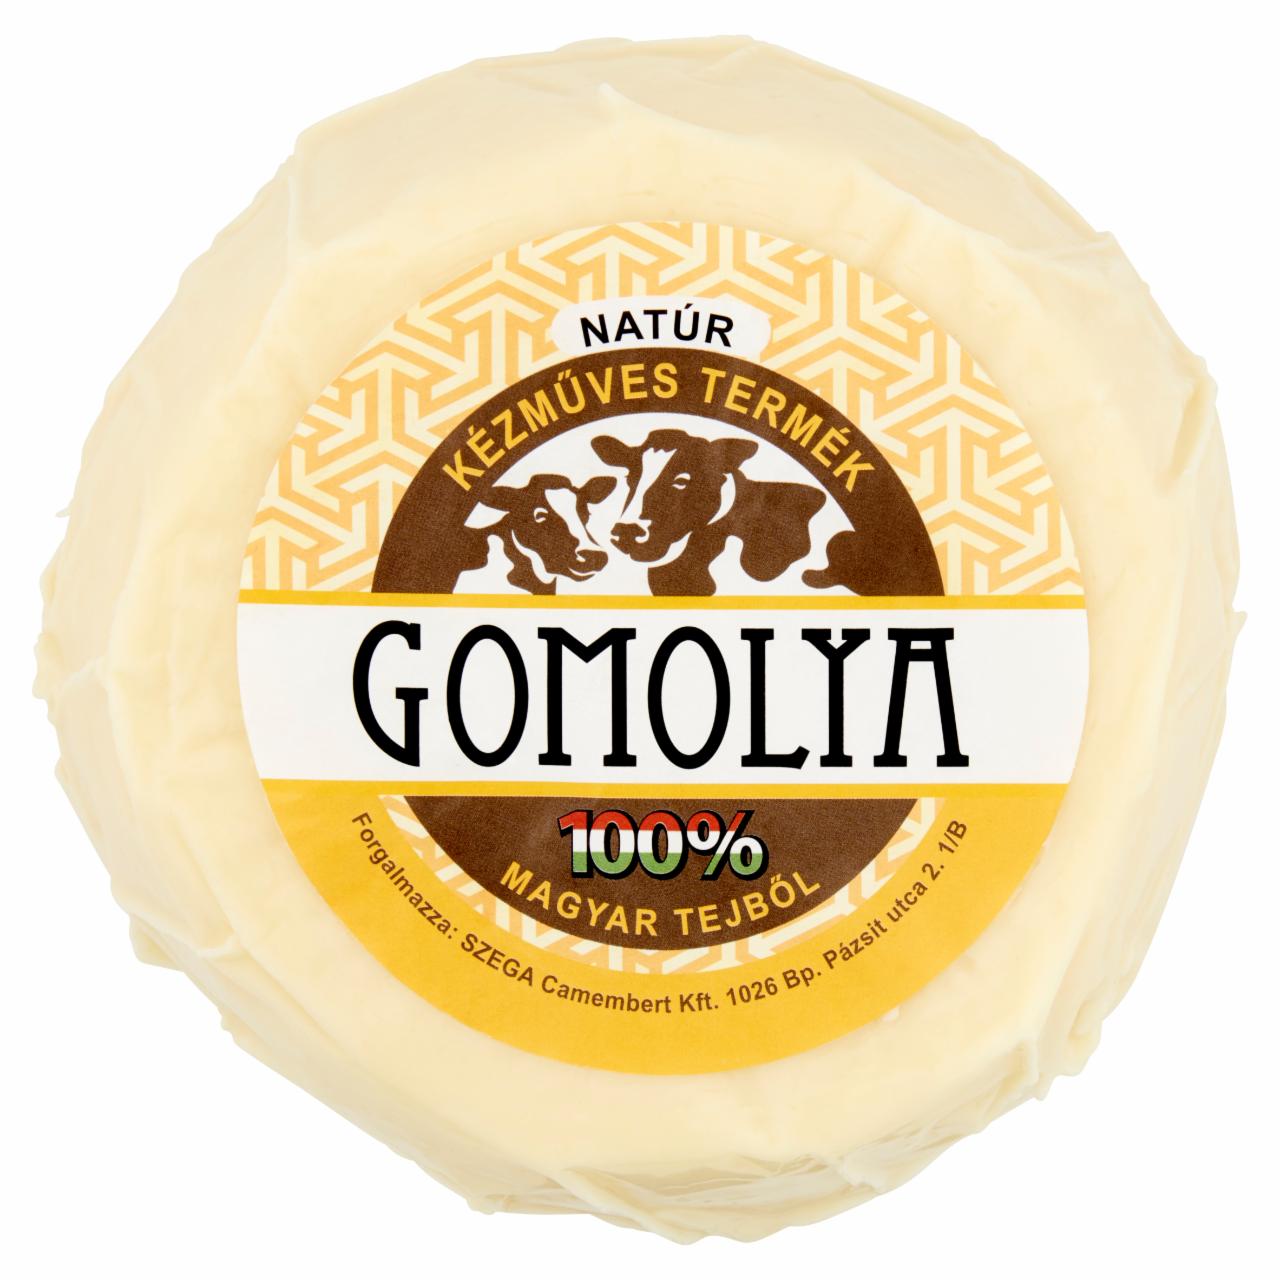 Képek - Zsíros, félkemény natúr gomolya sajt